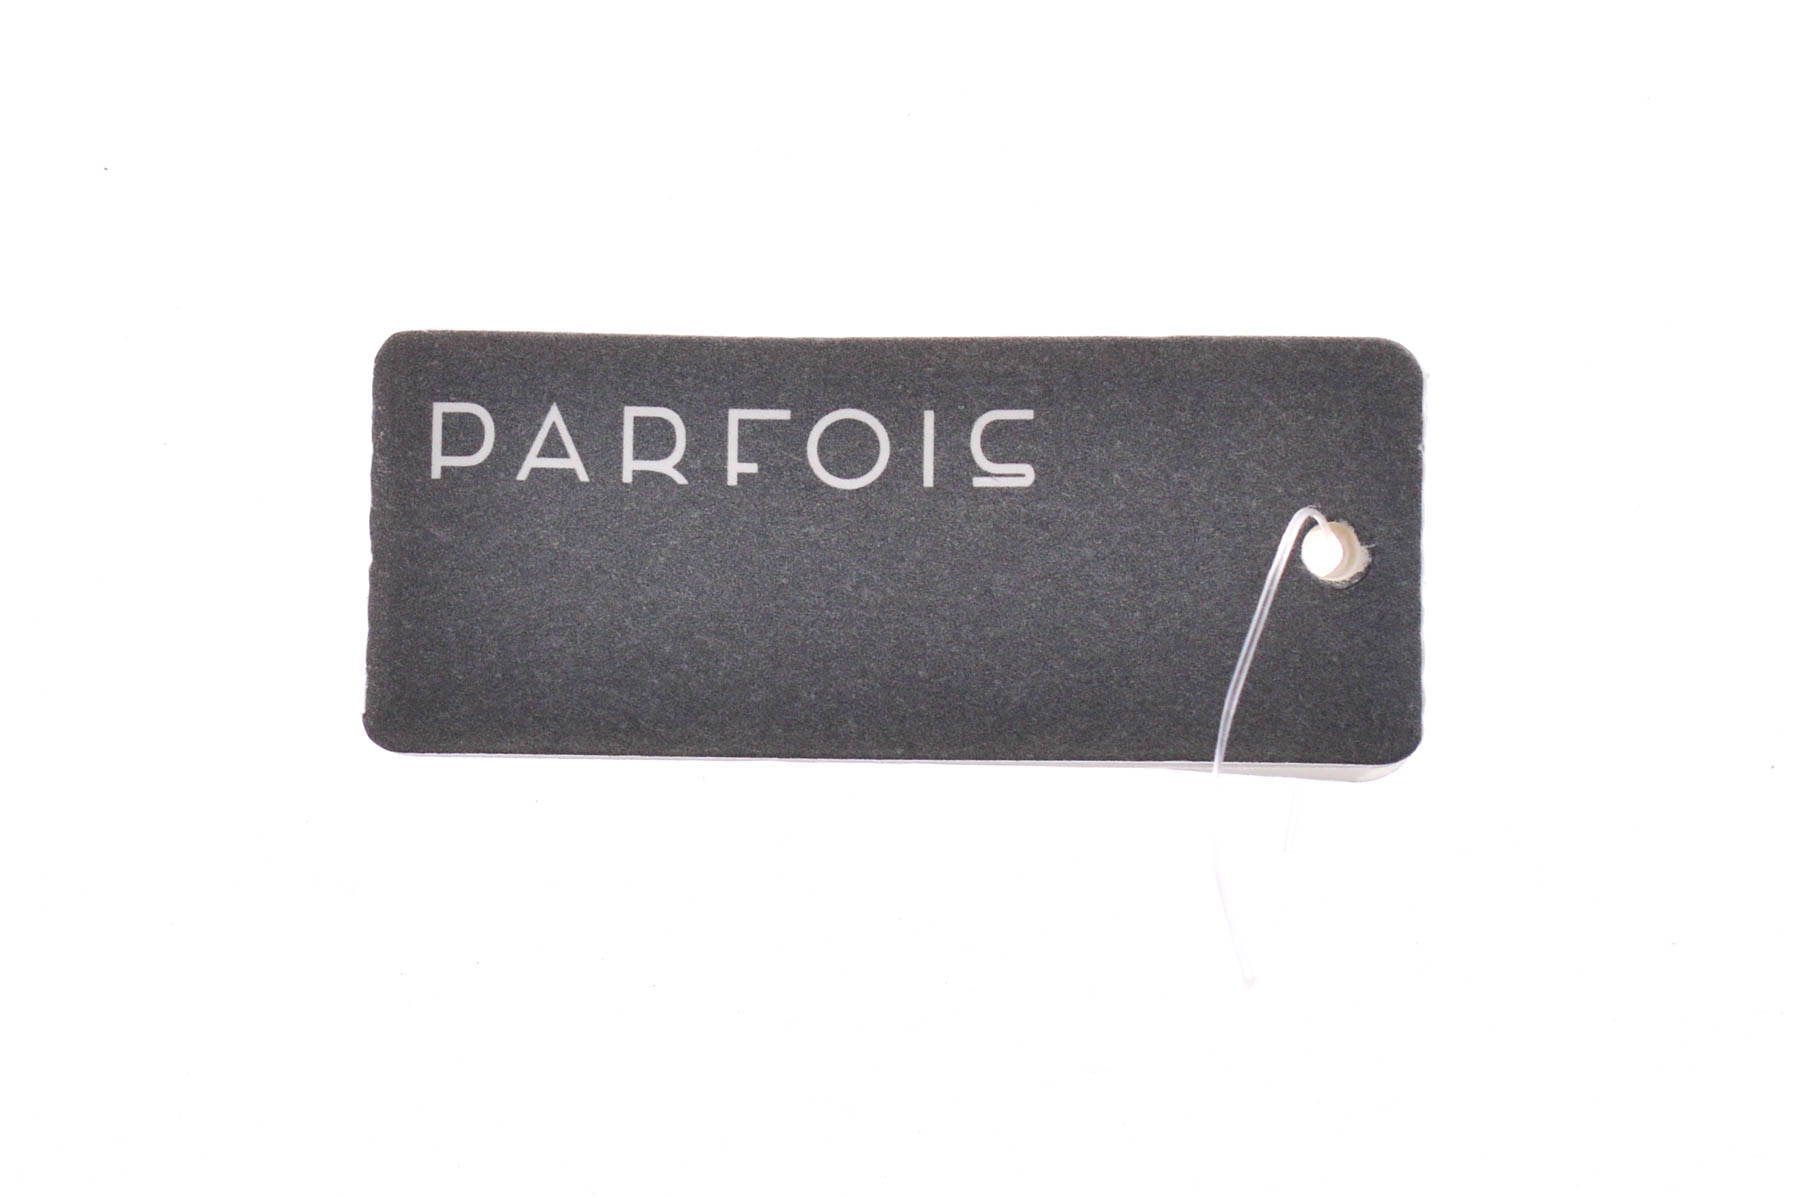 Bracelet - PARFOIS - 2